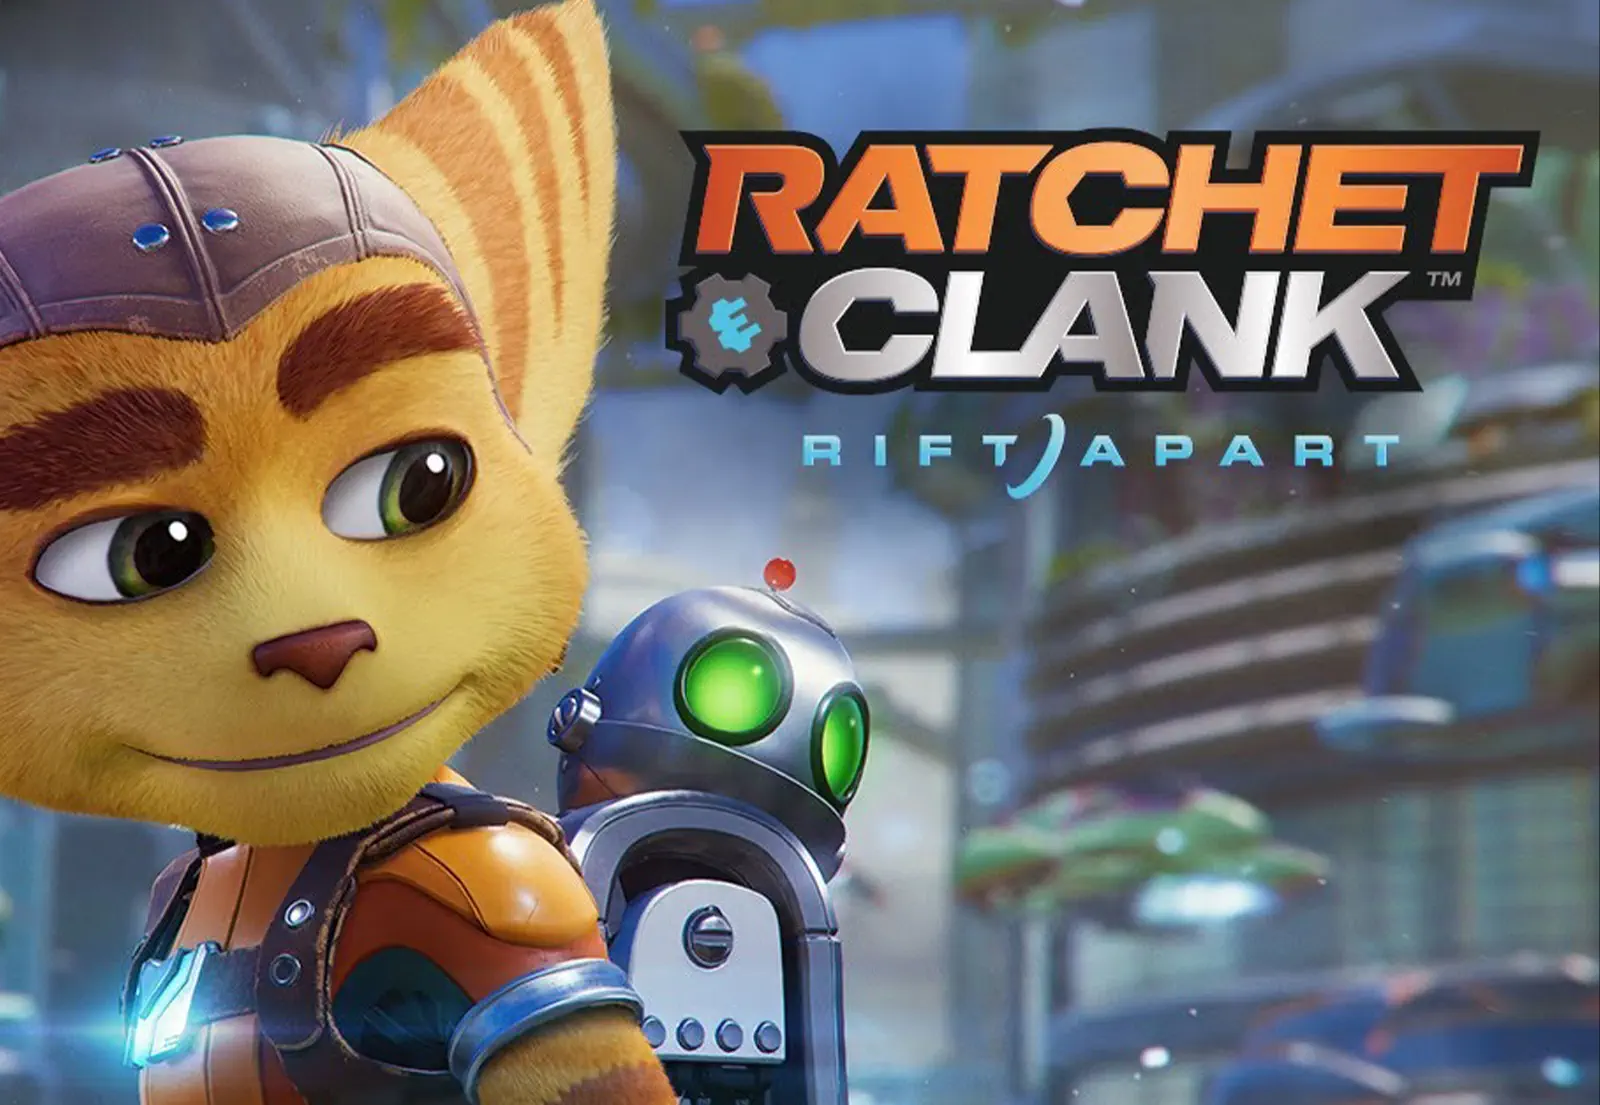 Ratchet & Clank: Rift Apart erscheint am 11. Juni und ist ab heute vorbestellbar!